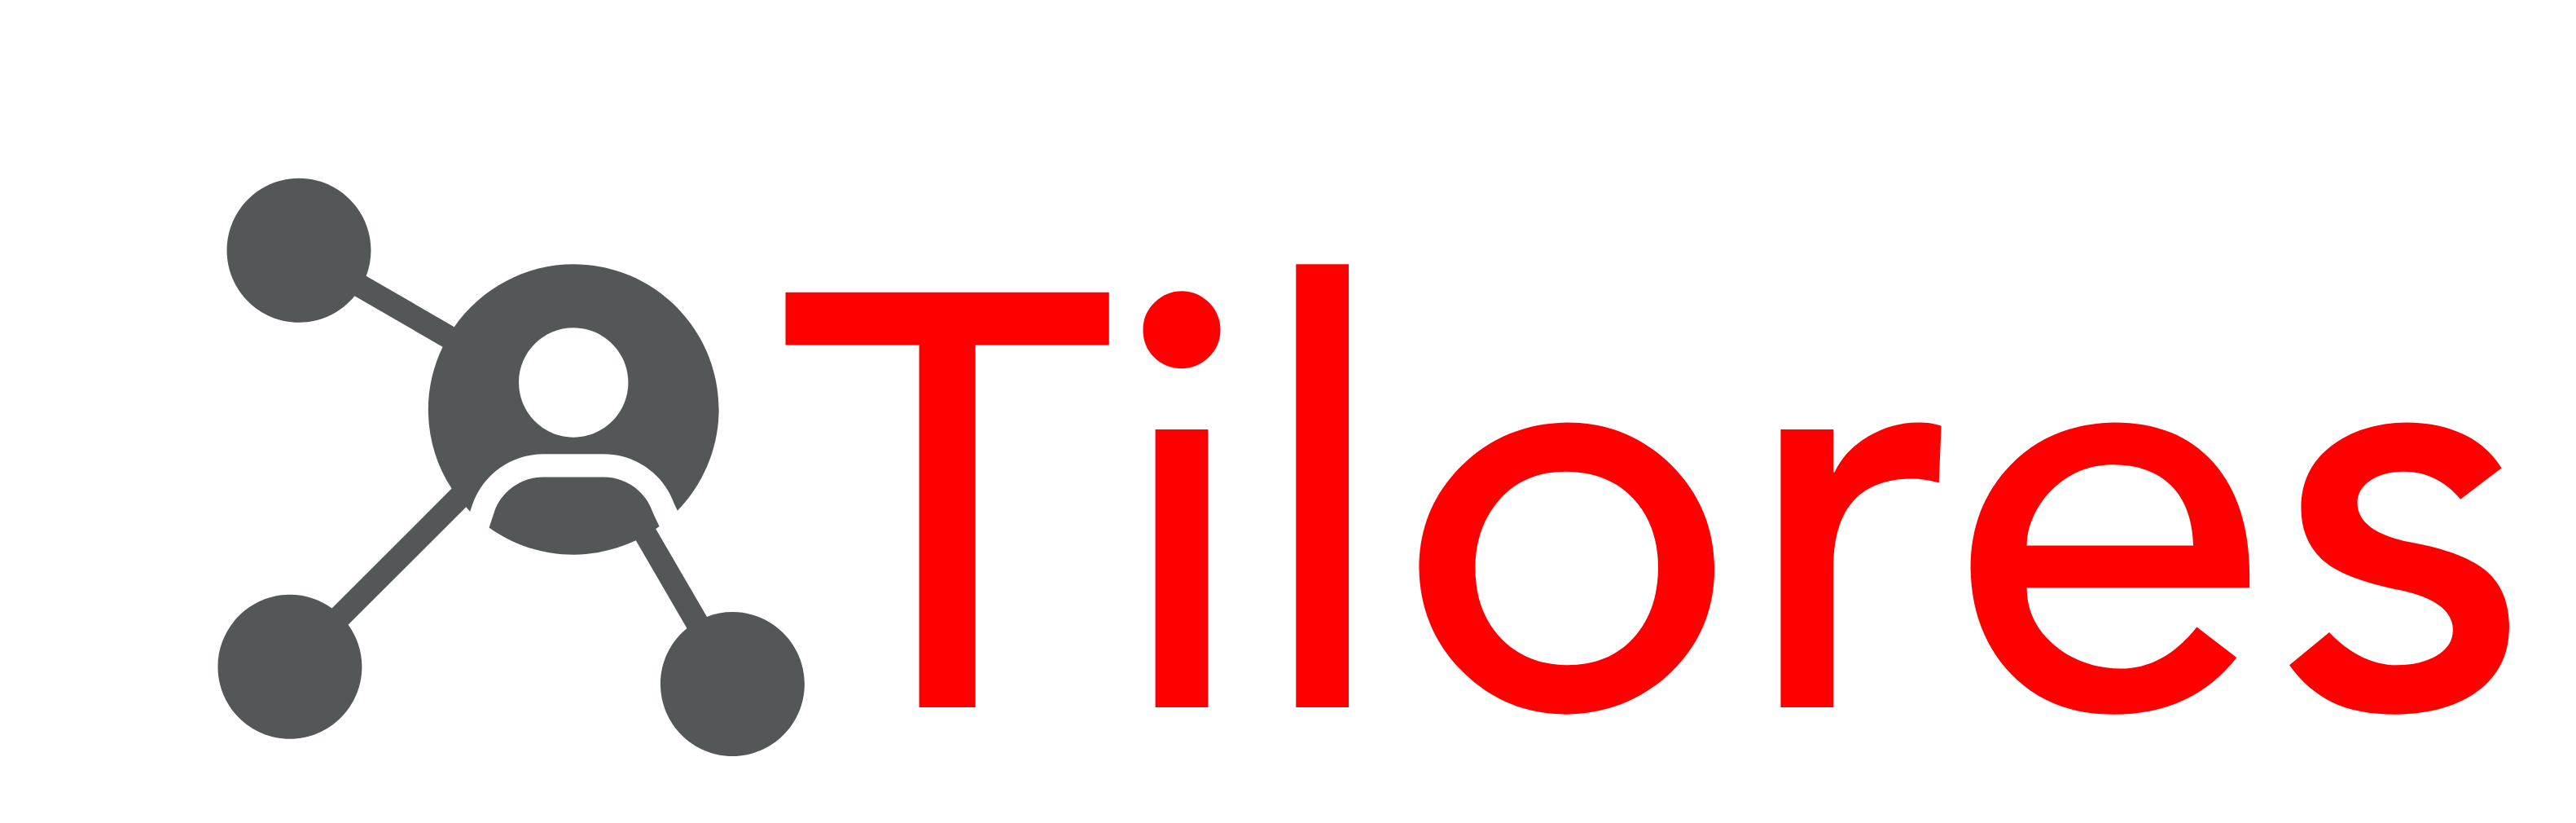 Tilores